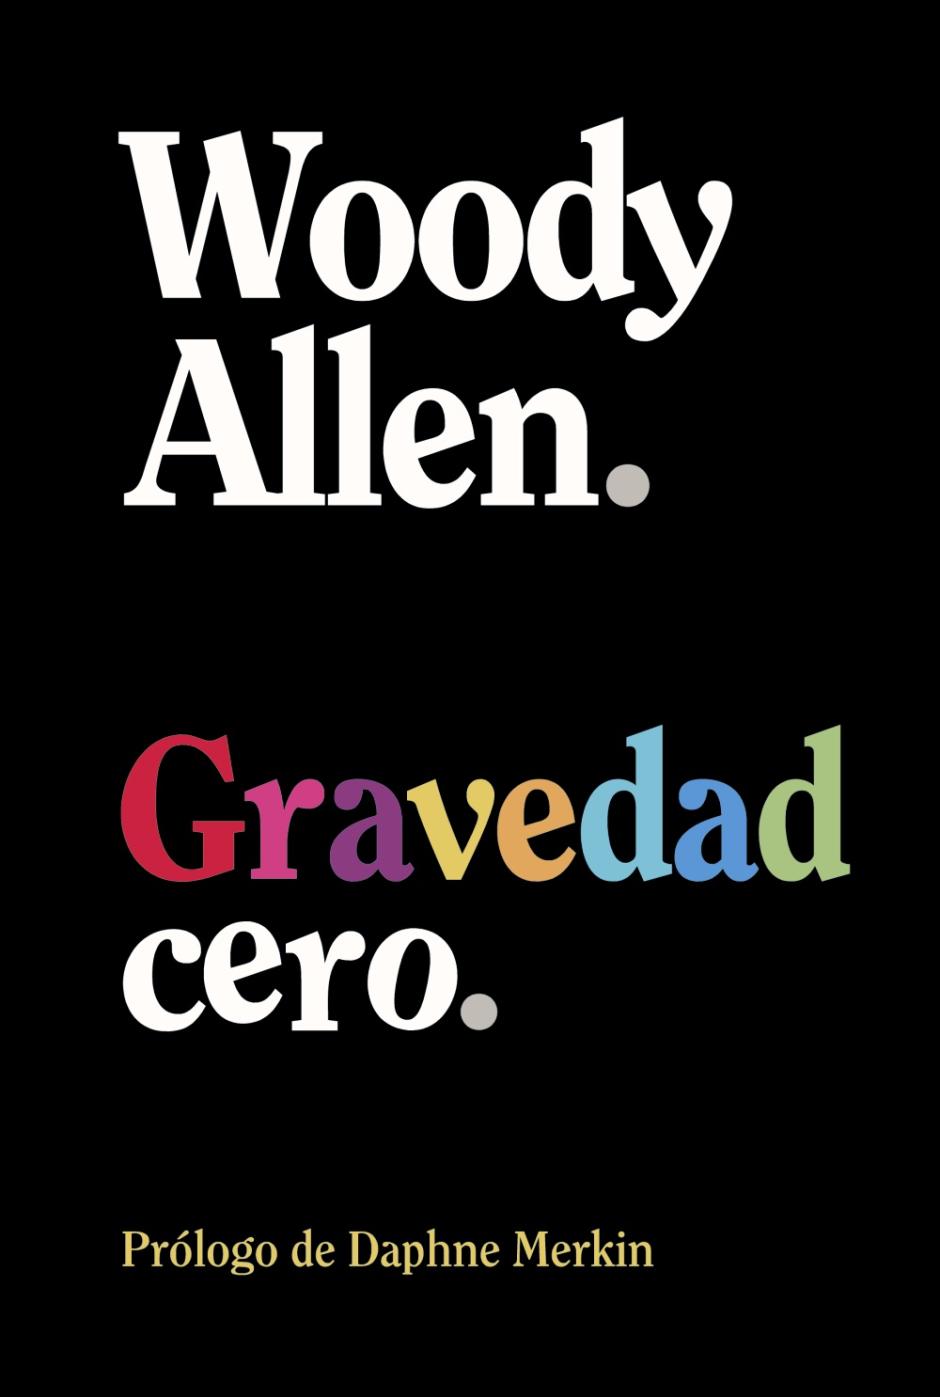 Gravedad Cero de Woody Allen